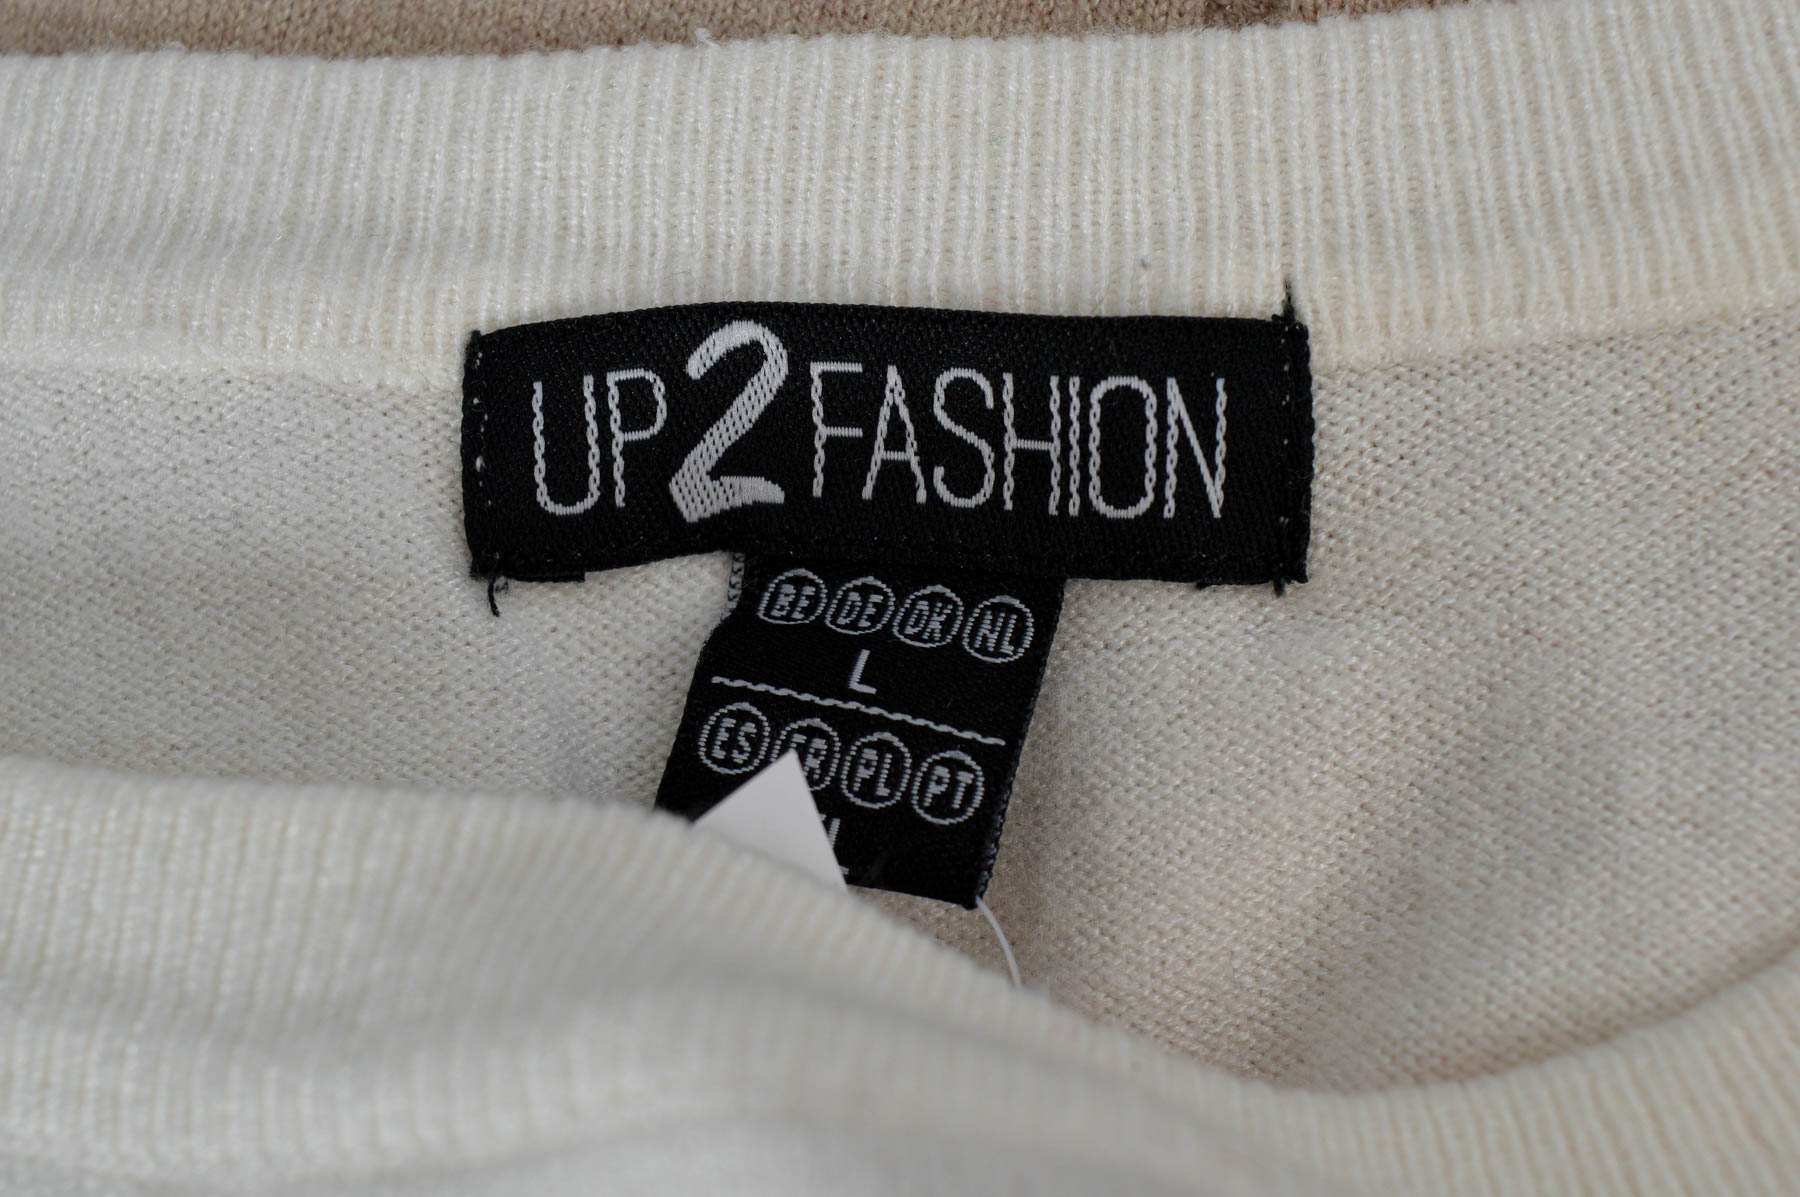 Γυναικείο πουλόβερ - Up 2 Fashion - 2